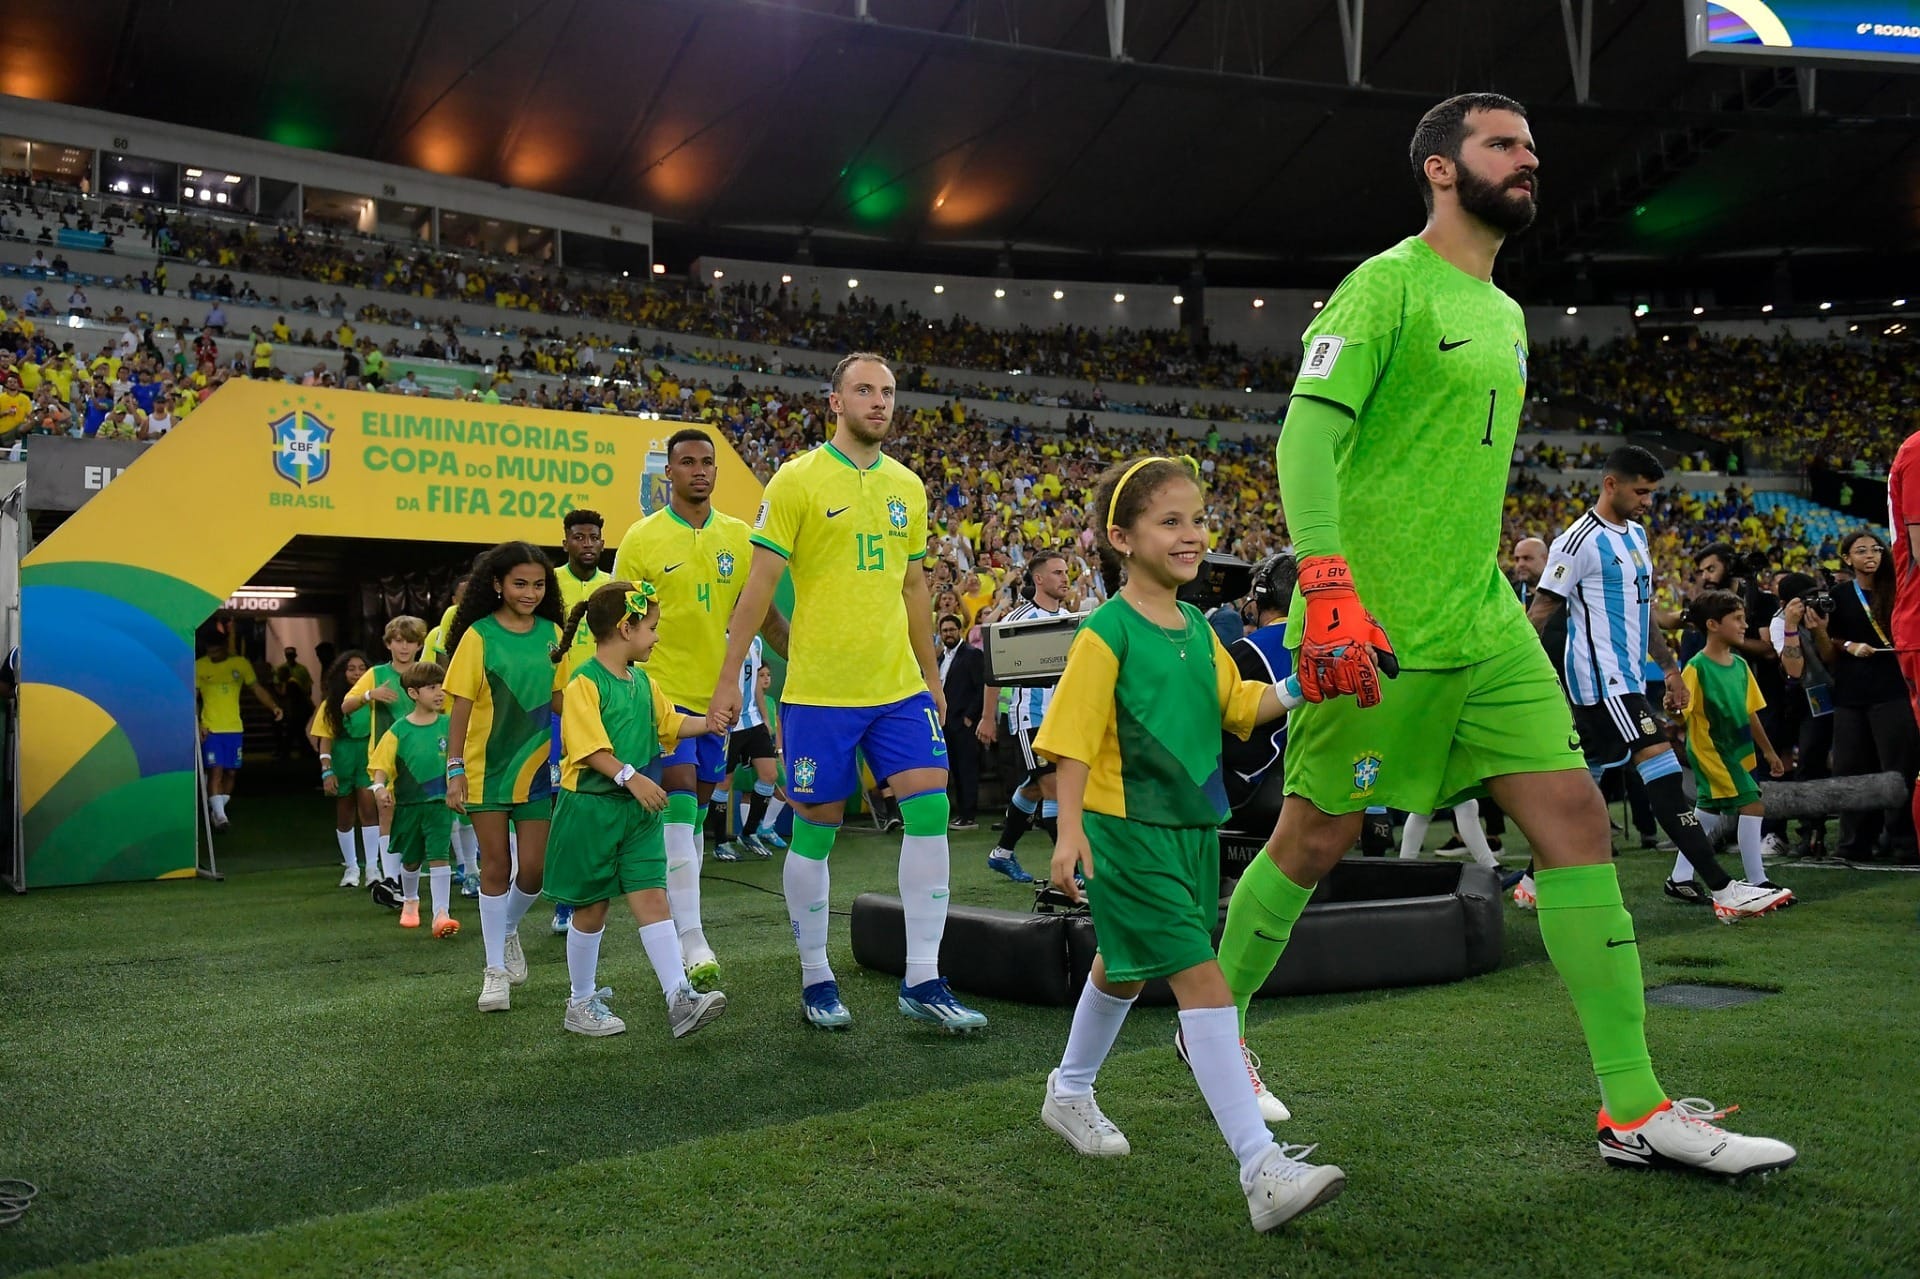 CBF anuncia jogo festivo entre as seleções de Brasil e Itália de